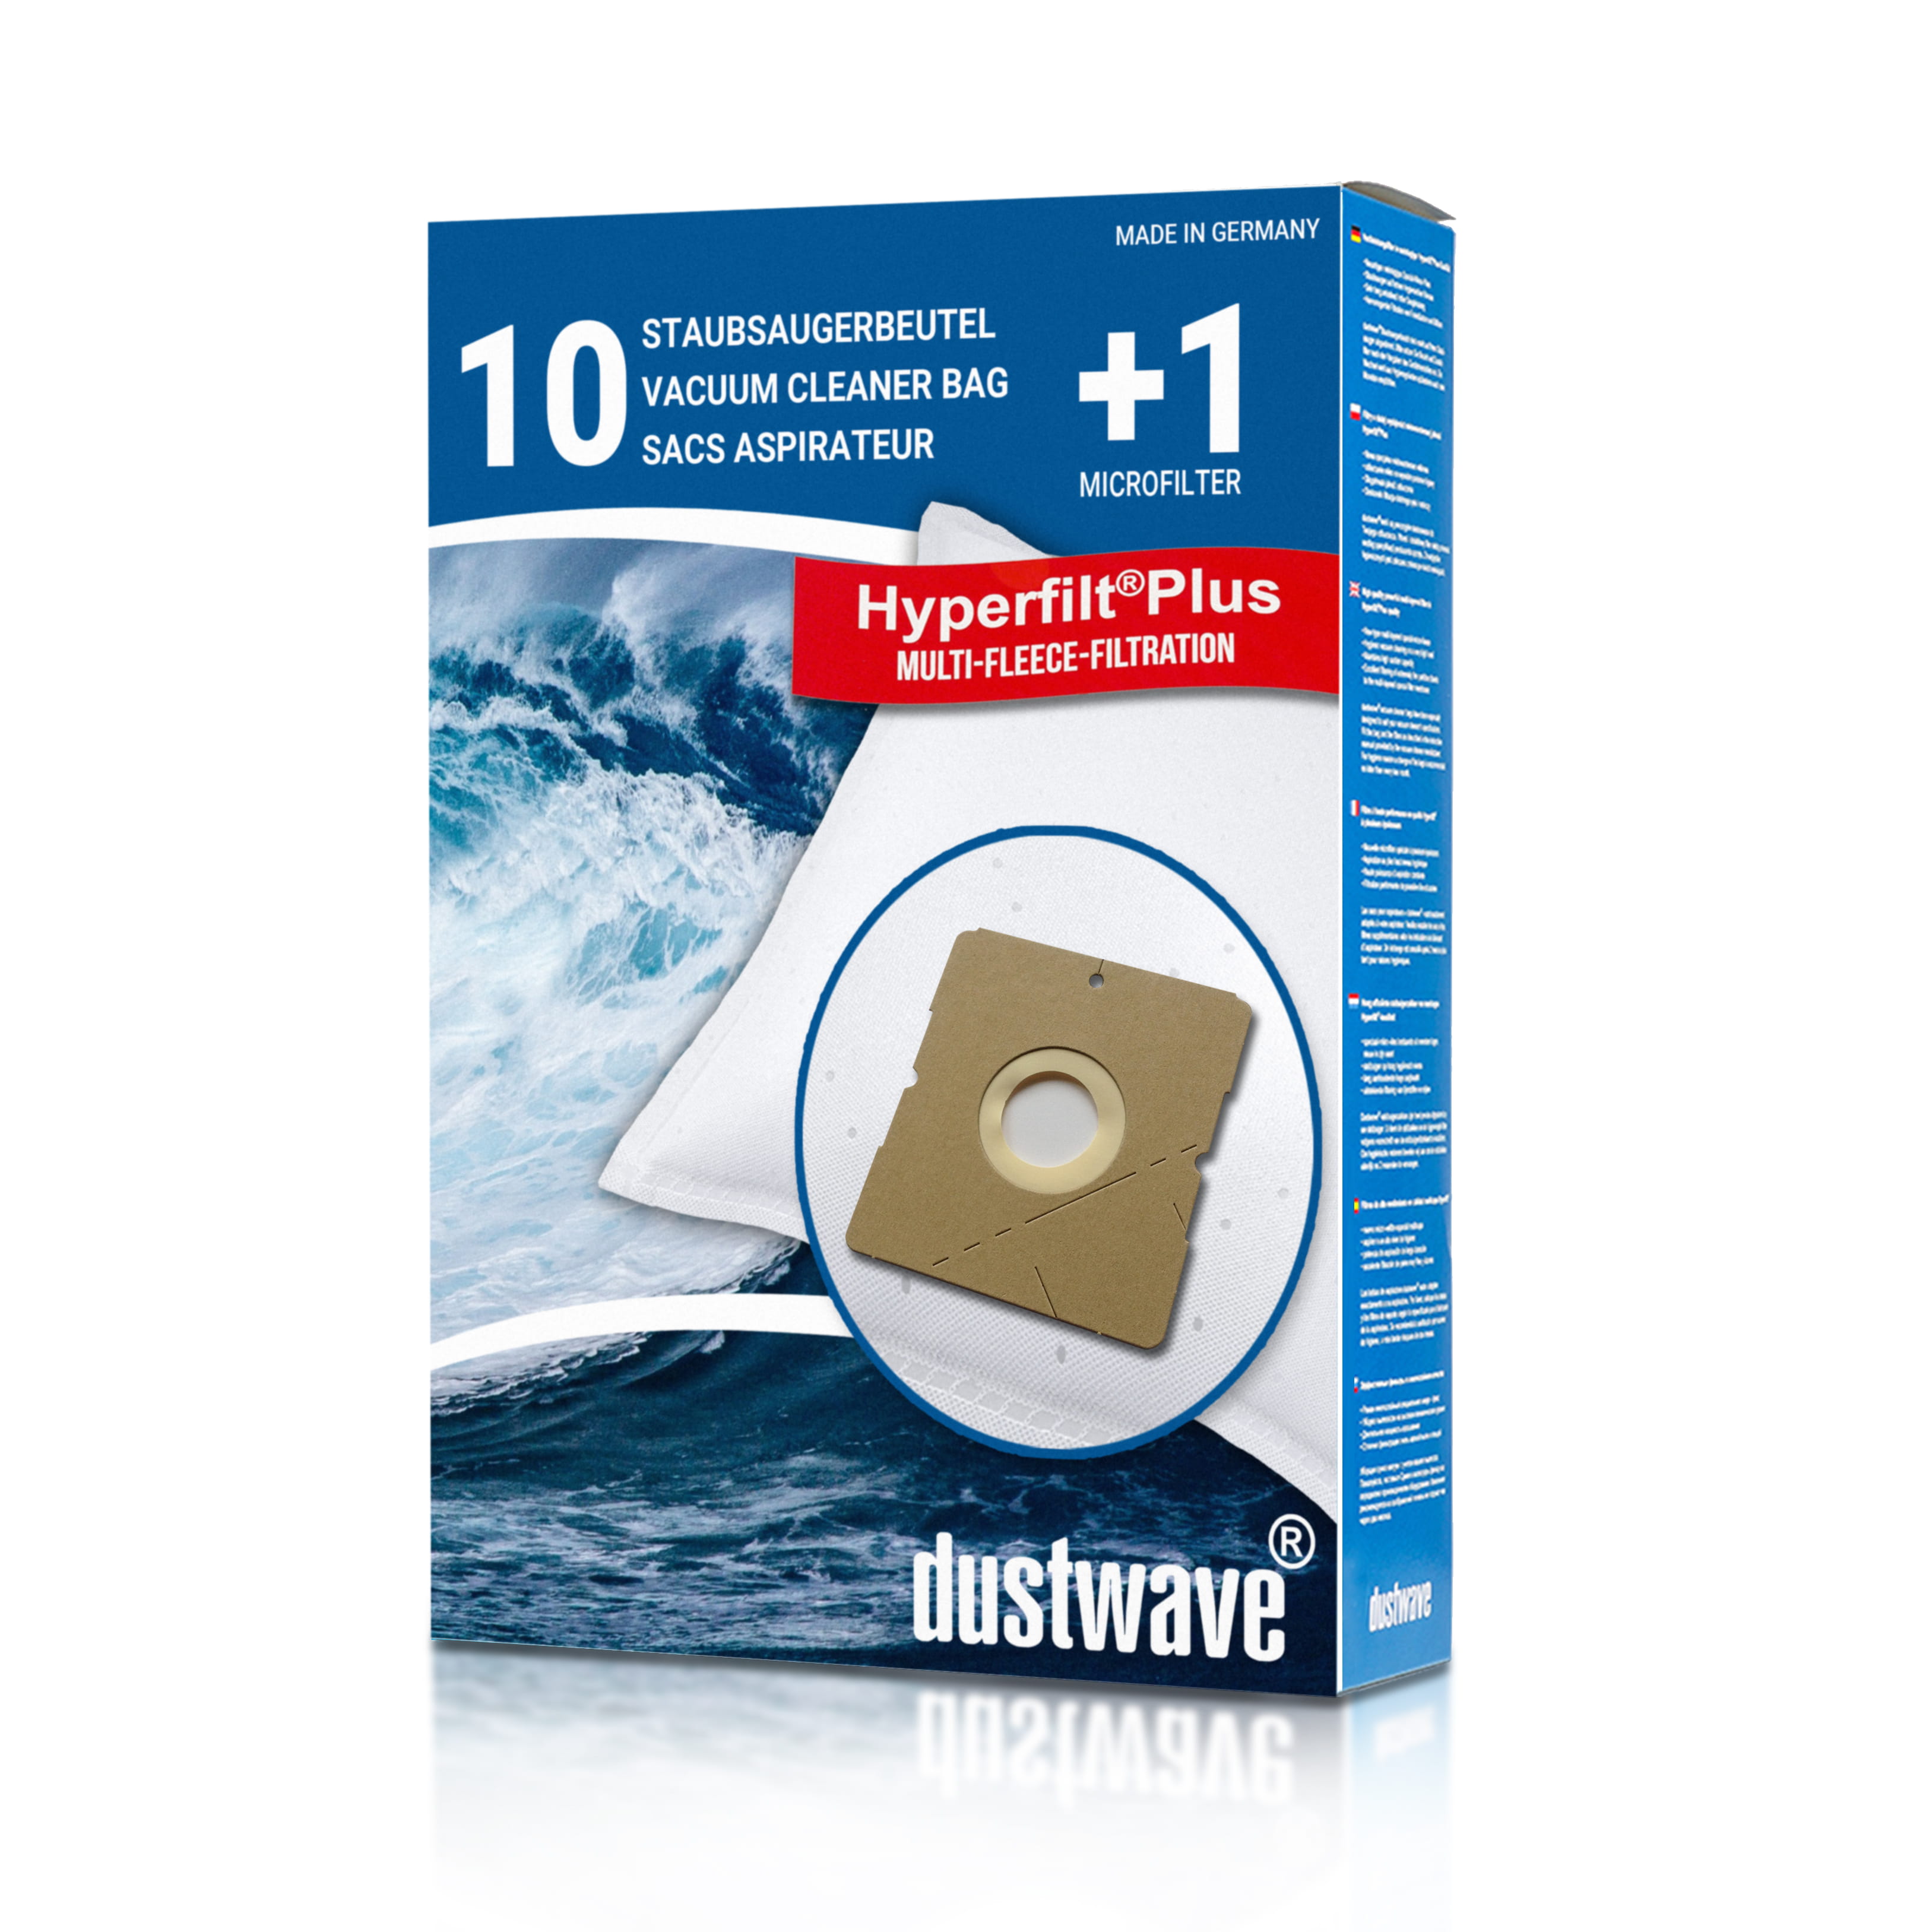 Dustwave® 10 Staubsaugerbeutel für Hoover SX9740 001 - hocheffizient, mehrlagiges Mikrovlies mit Hygieneverschluss - Made in Germany